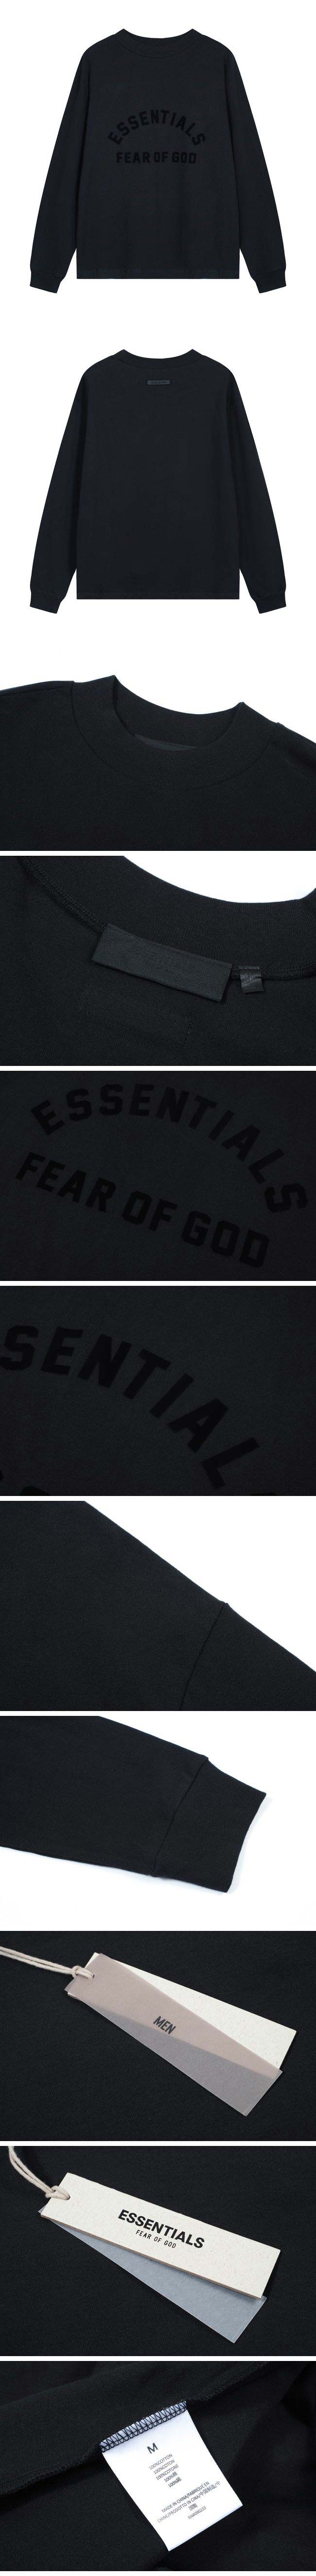 Fear of God Essentials Fog Sweat フィアオブゴッド エッセンシャルズ Fog スウェット ブラック